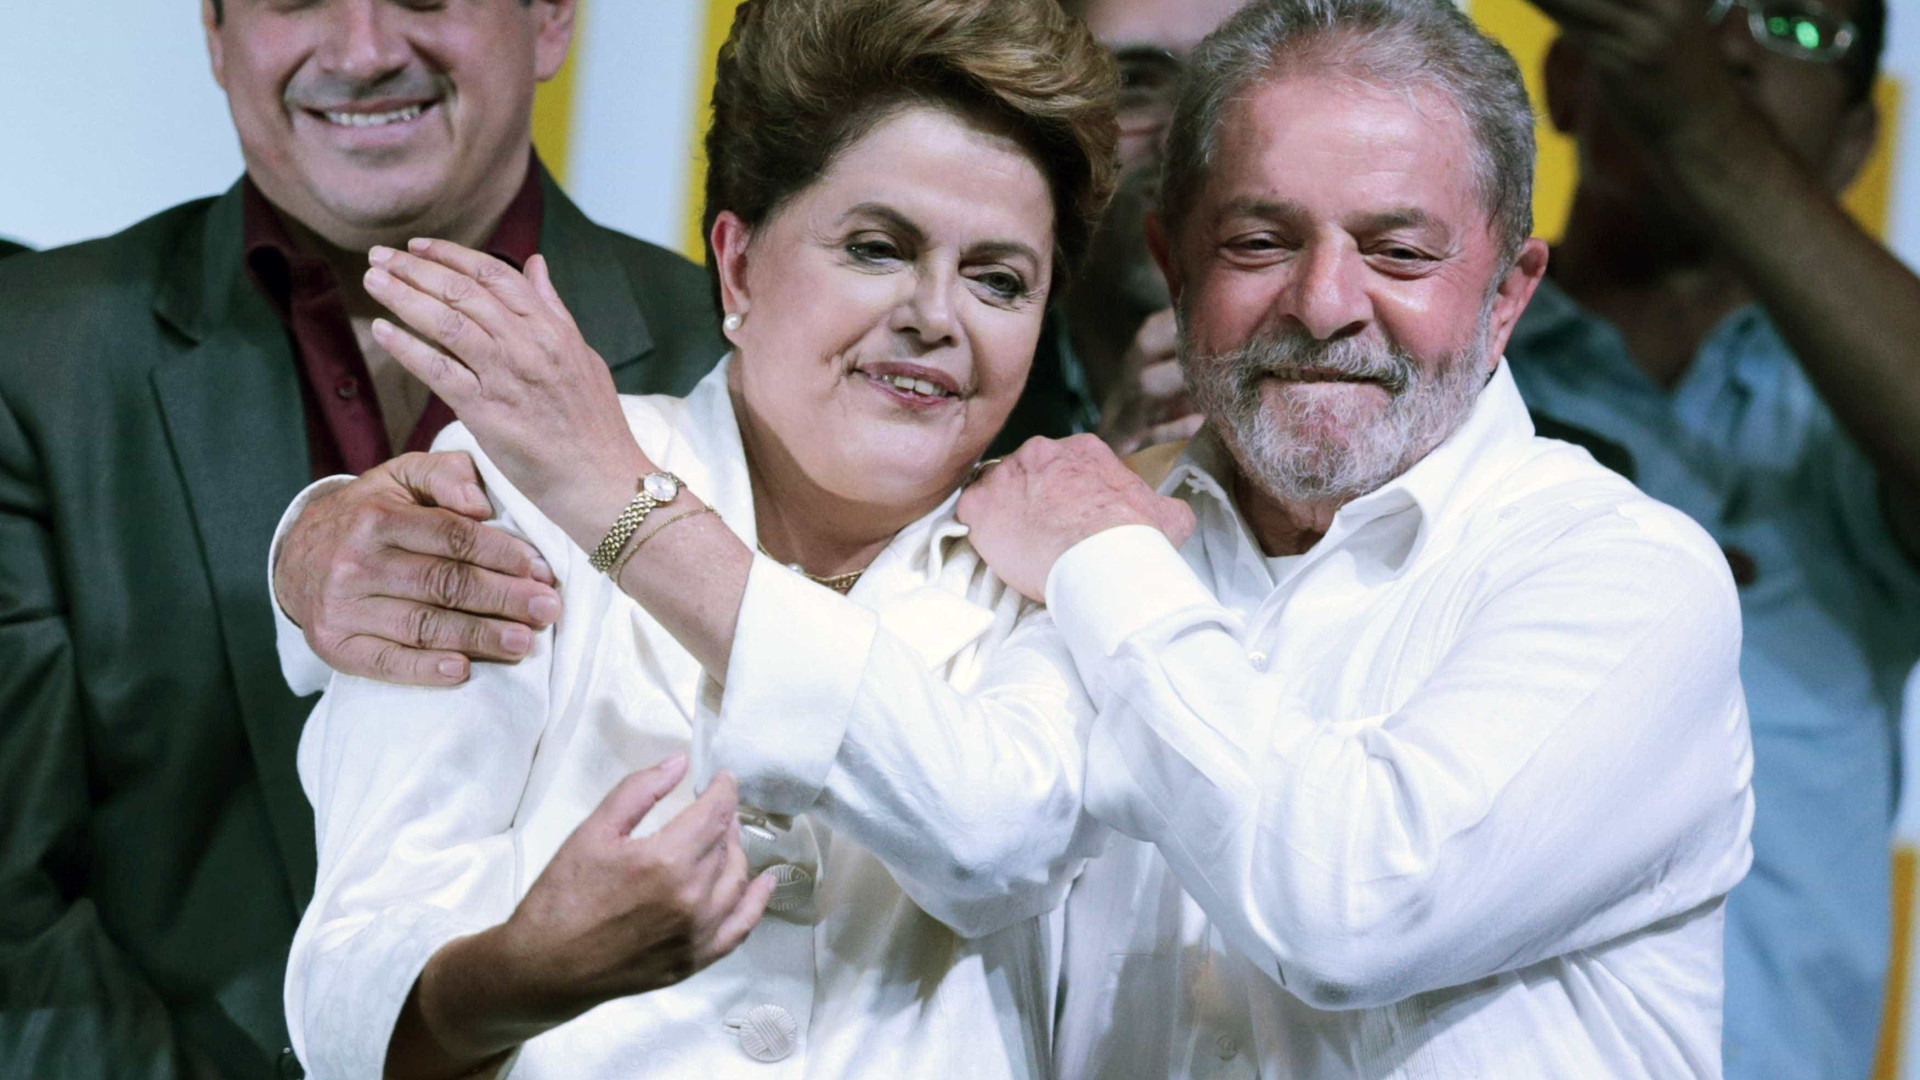 Eleitorado se sentiu traído por Dilma, diz petista